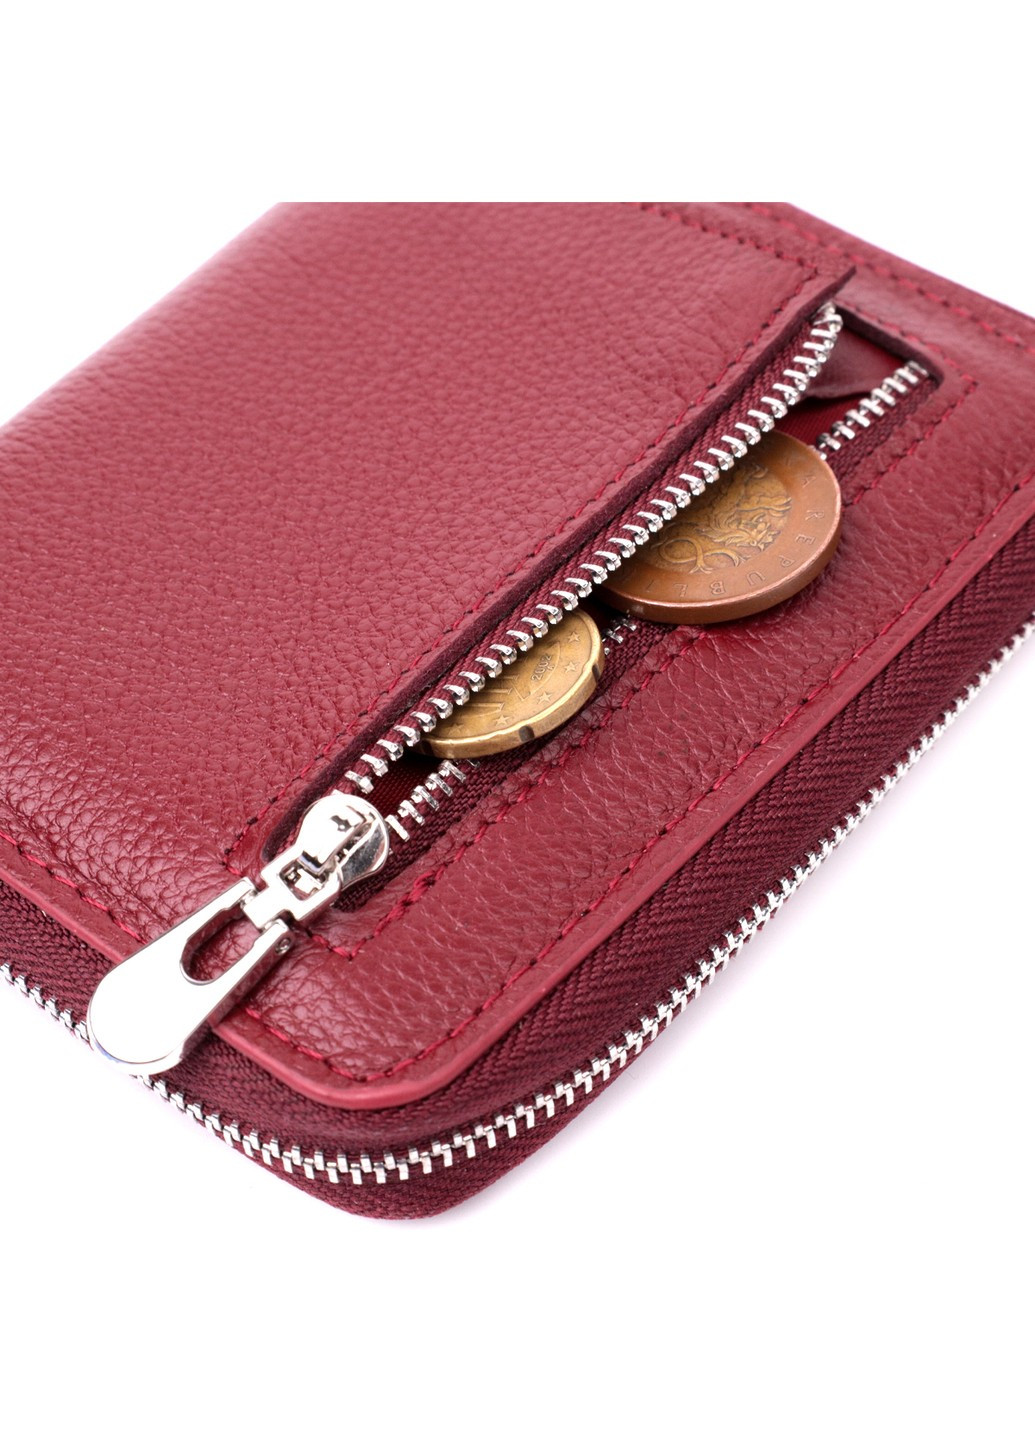 Симпатичный кожаный кошелек для женщин на молнии с тисненым логотипом производителя 19491 Бордовый st leather (277980395)